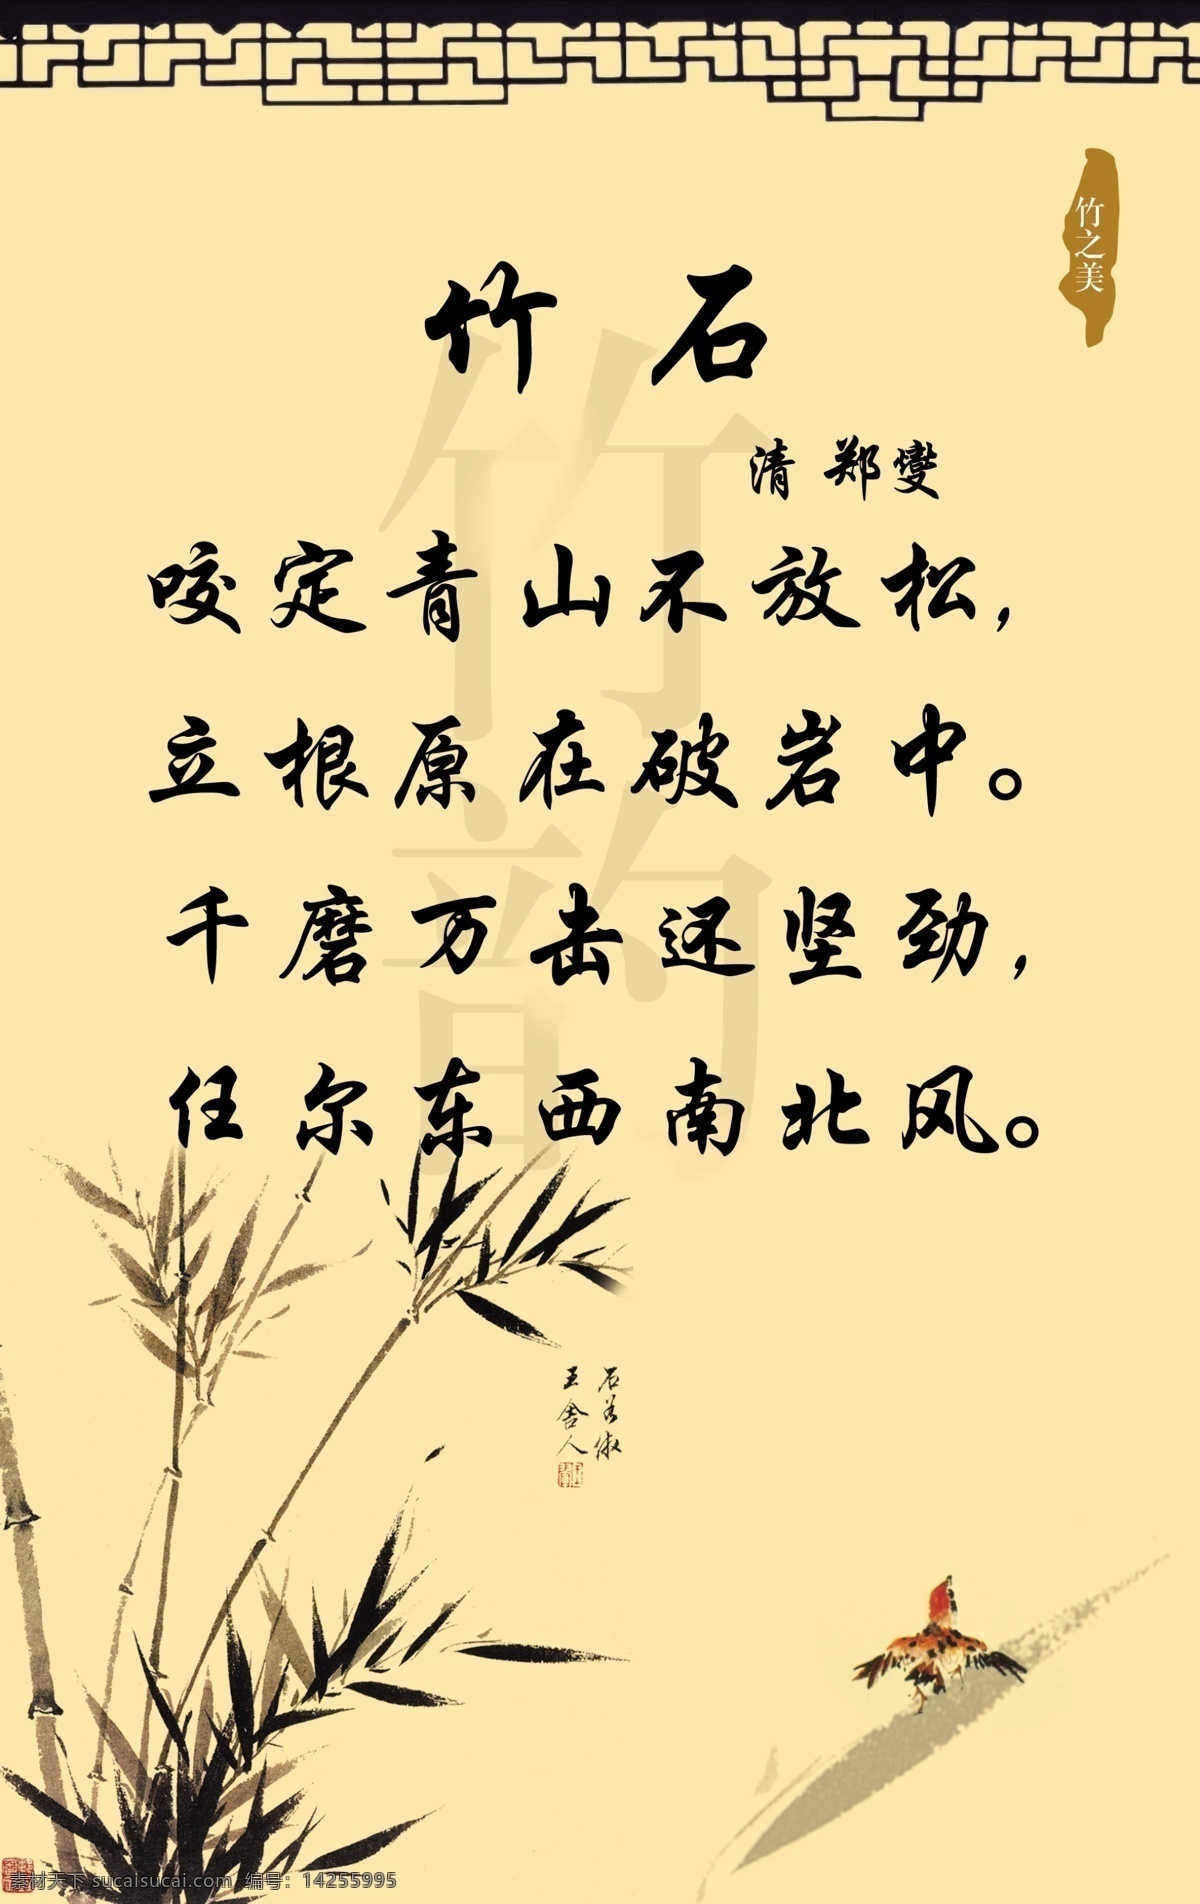 古诗背景 竹子 古代边框 画框 水墨竹子 广告设计模板 源文件